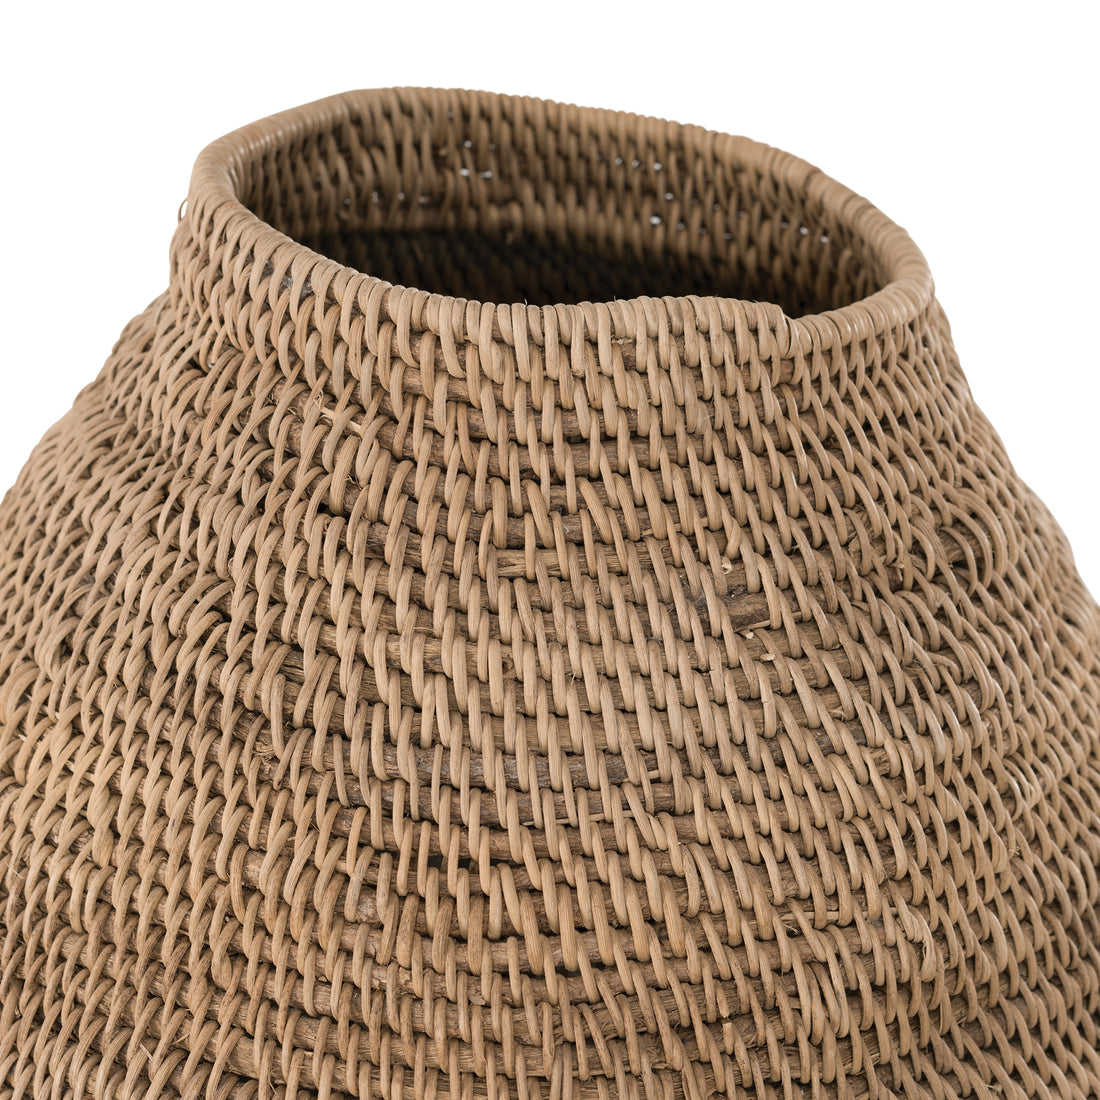 Buhera Basket